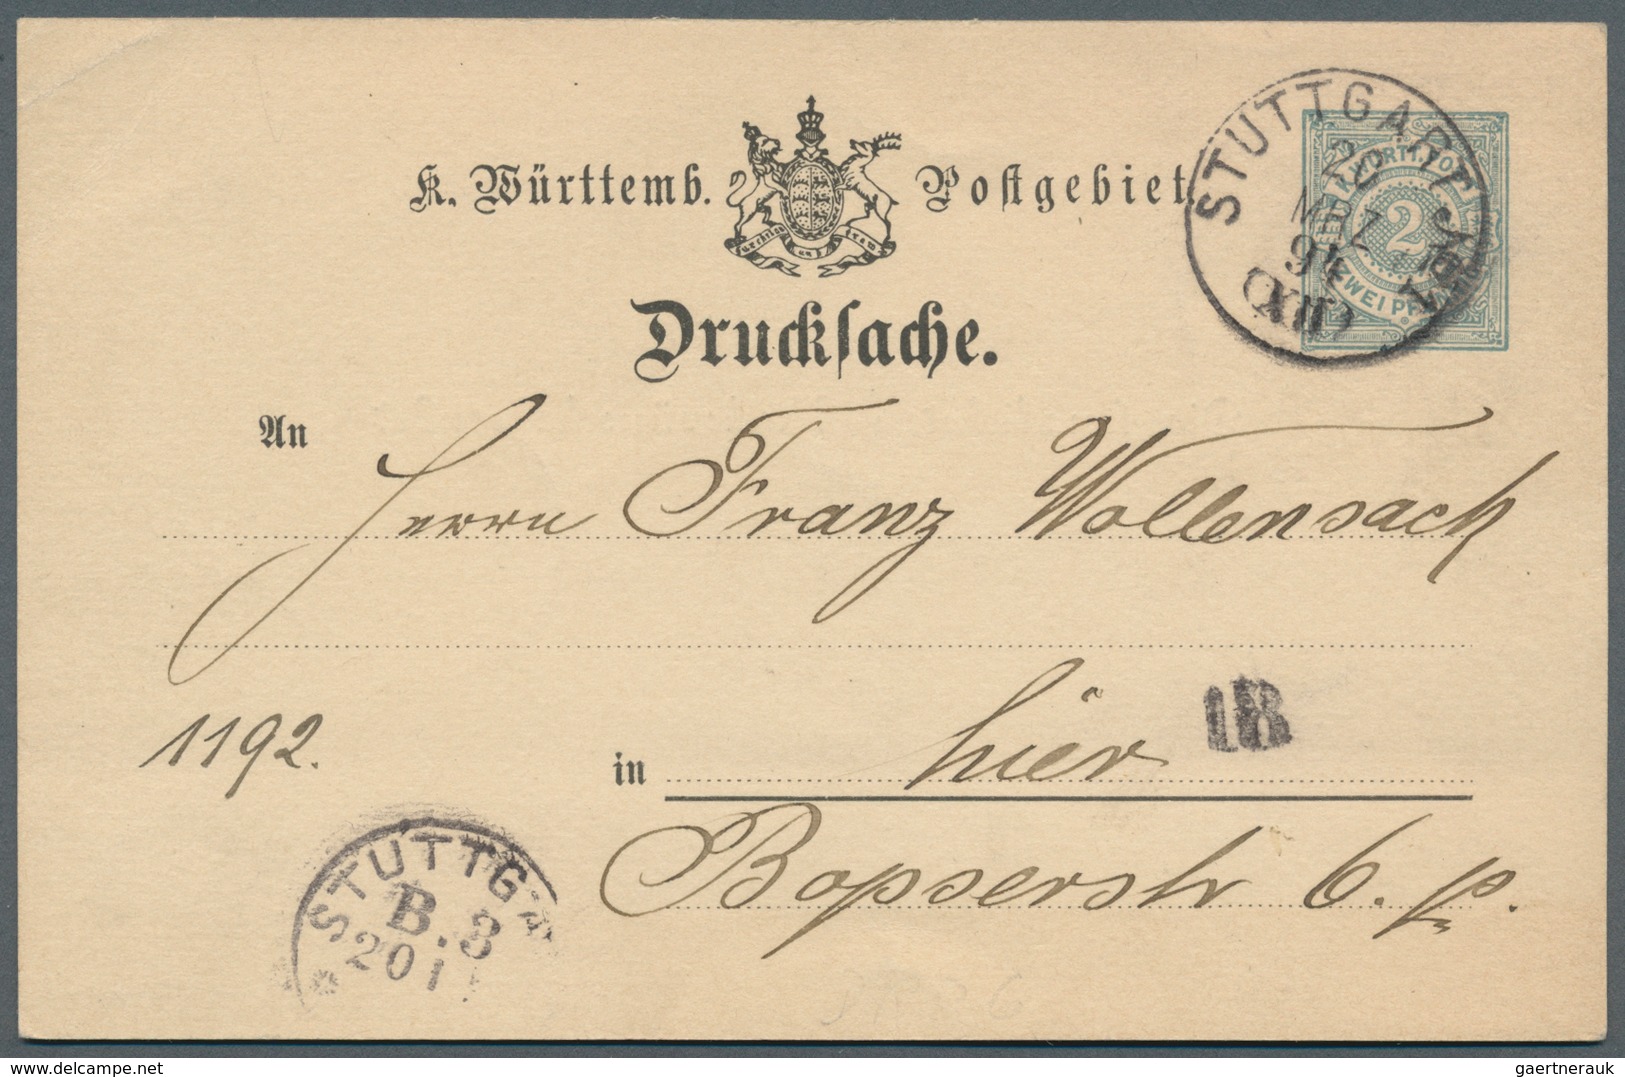 Württemberg - Ganzsachen: 1862/1920, sehr umfangreiche Sammlung ab U 1 bis DPB 67, insgesamt 807 nur